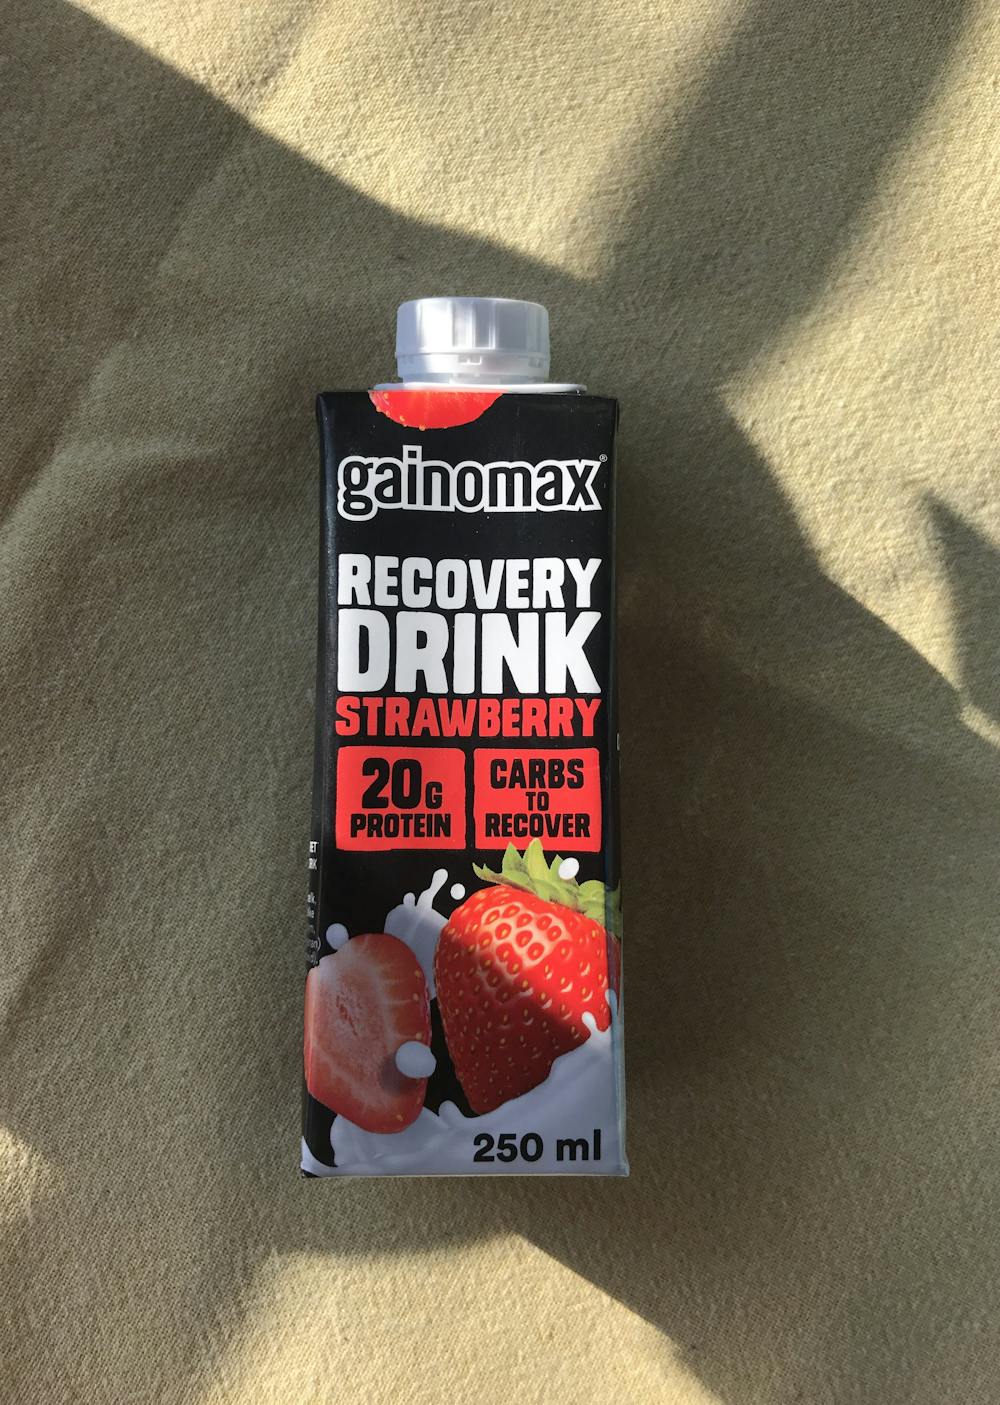 Recovery drink, strawberry, Gainomax